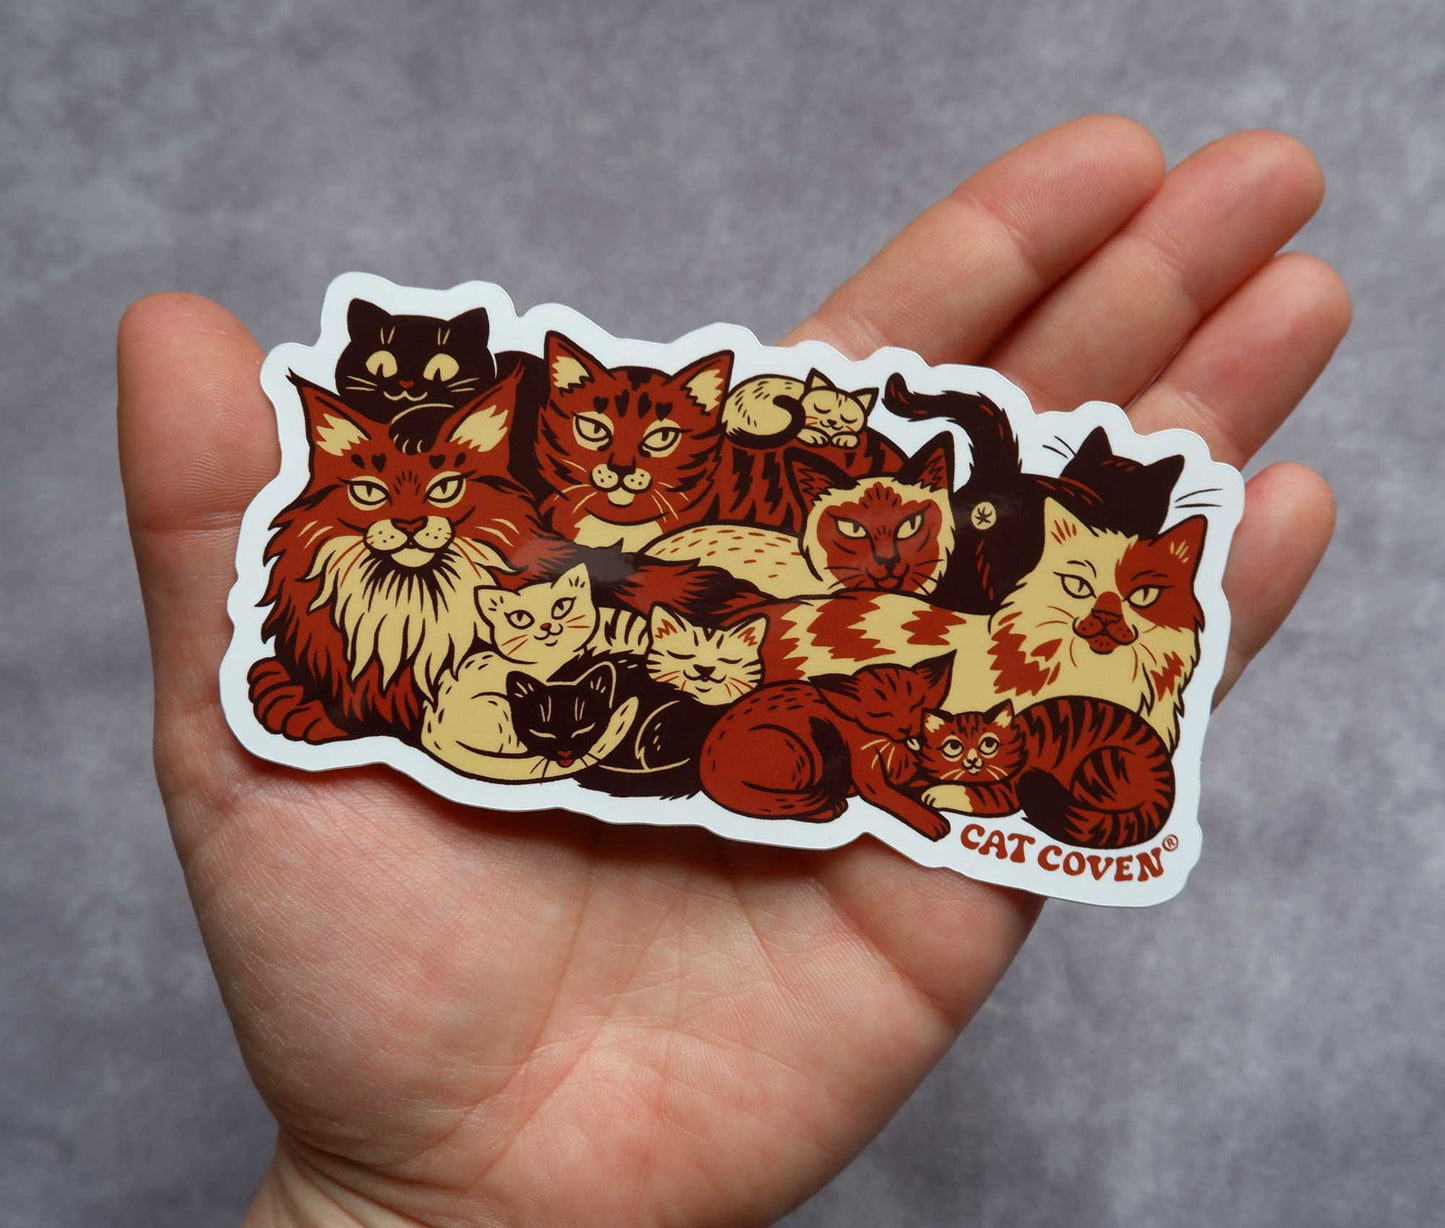 Clutter of Cats Vinyl Sticker